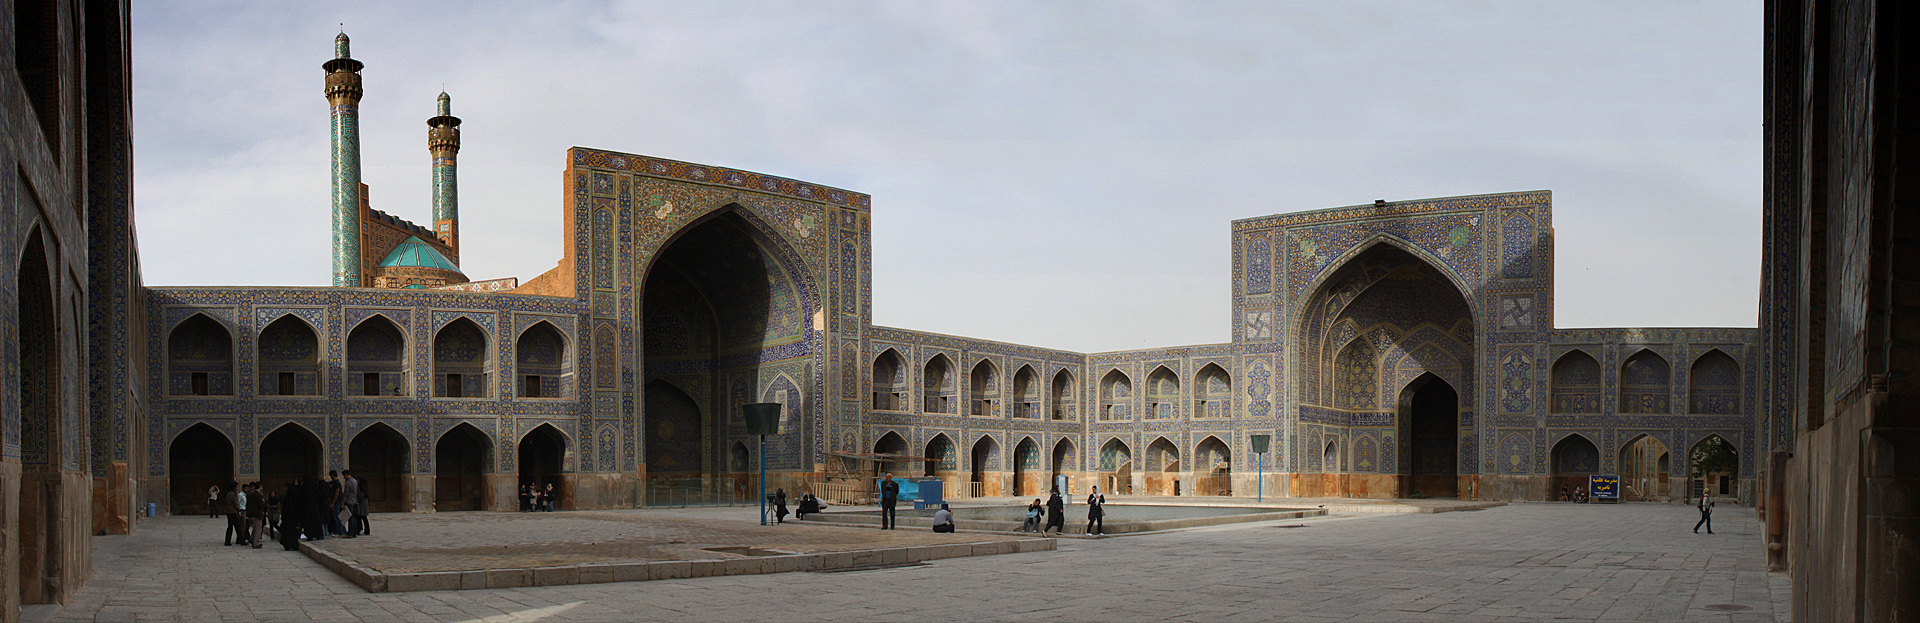 Esfahan, Imam Mosque